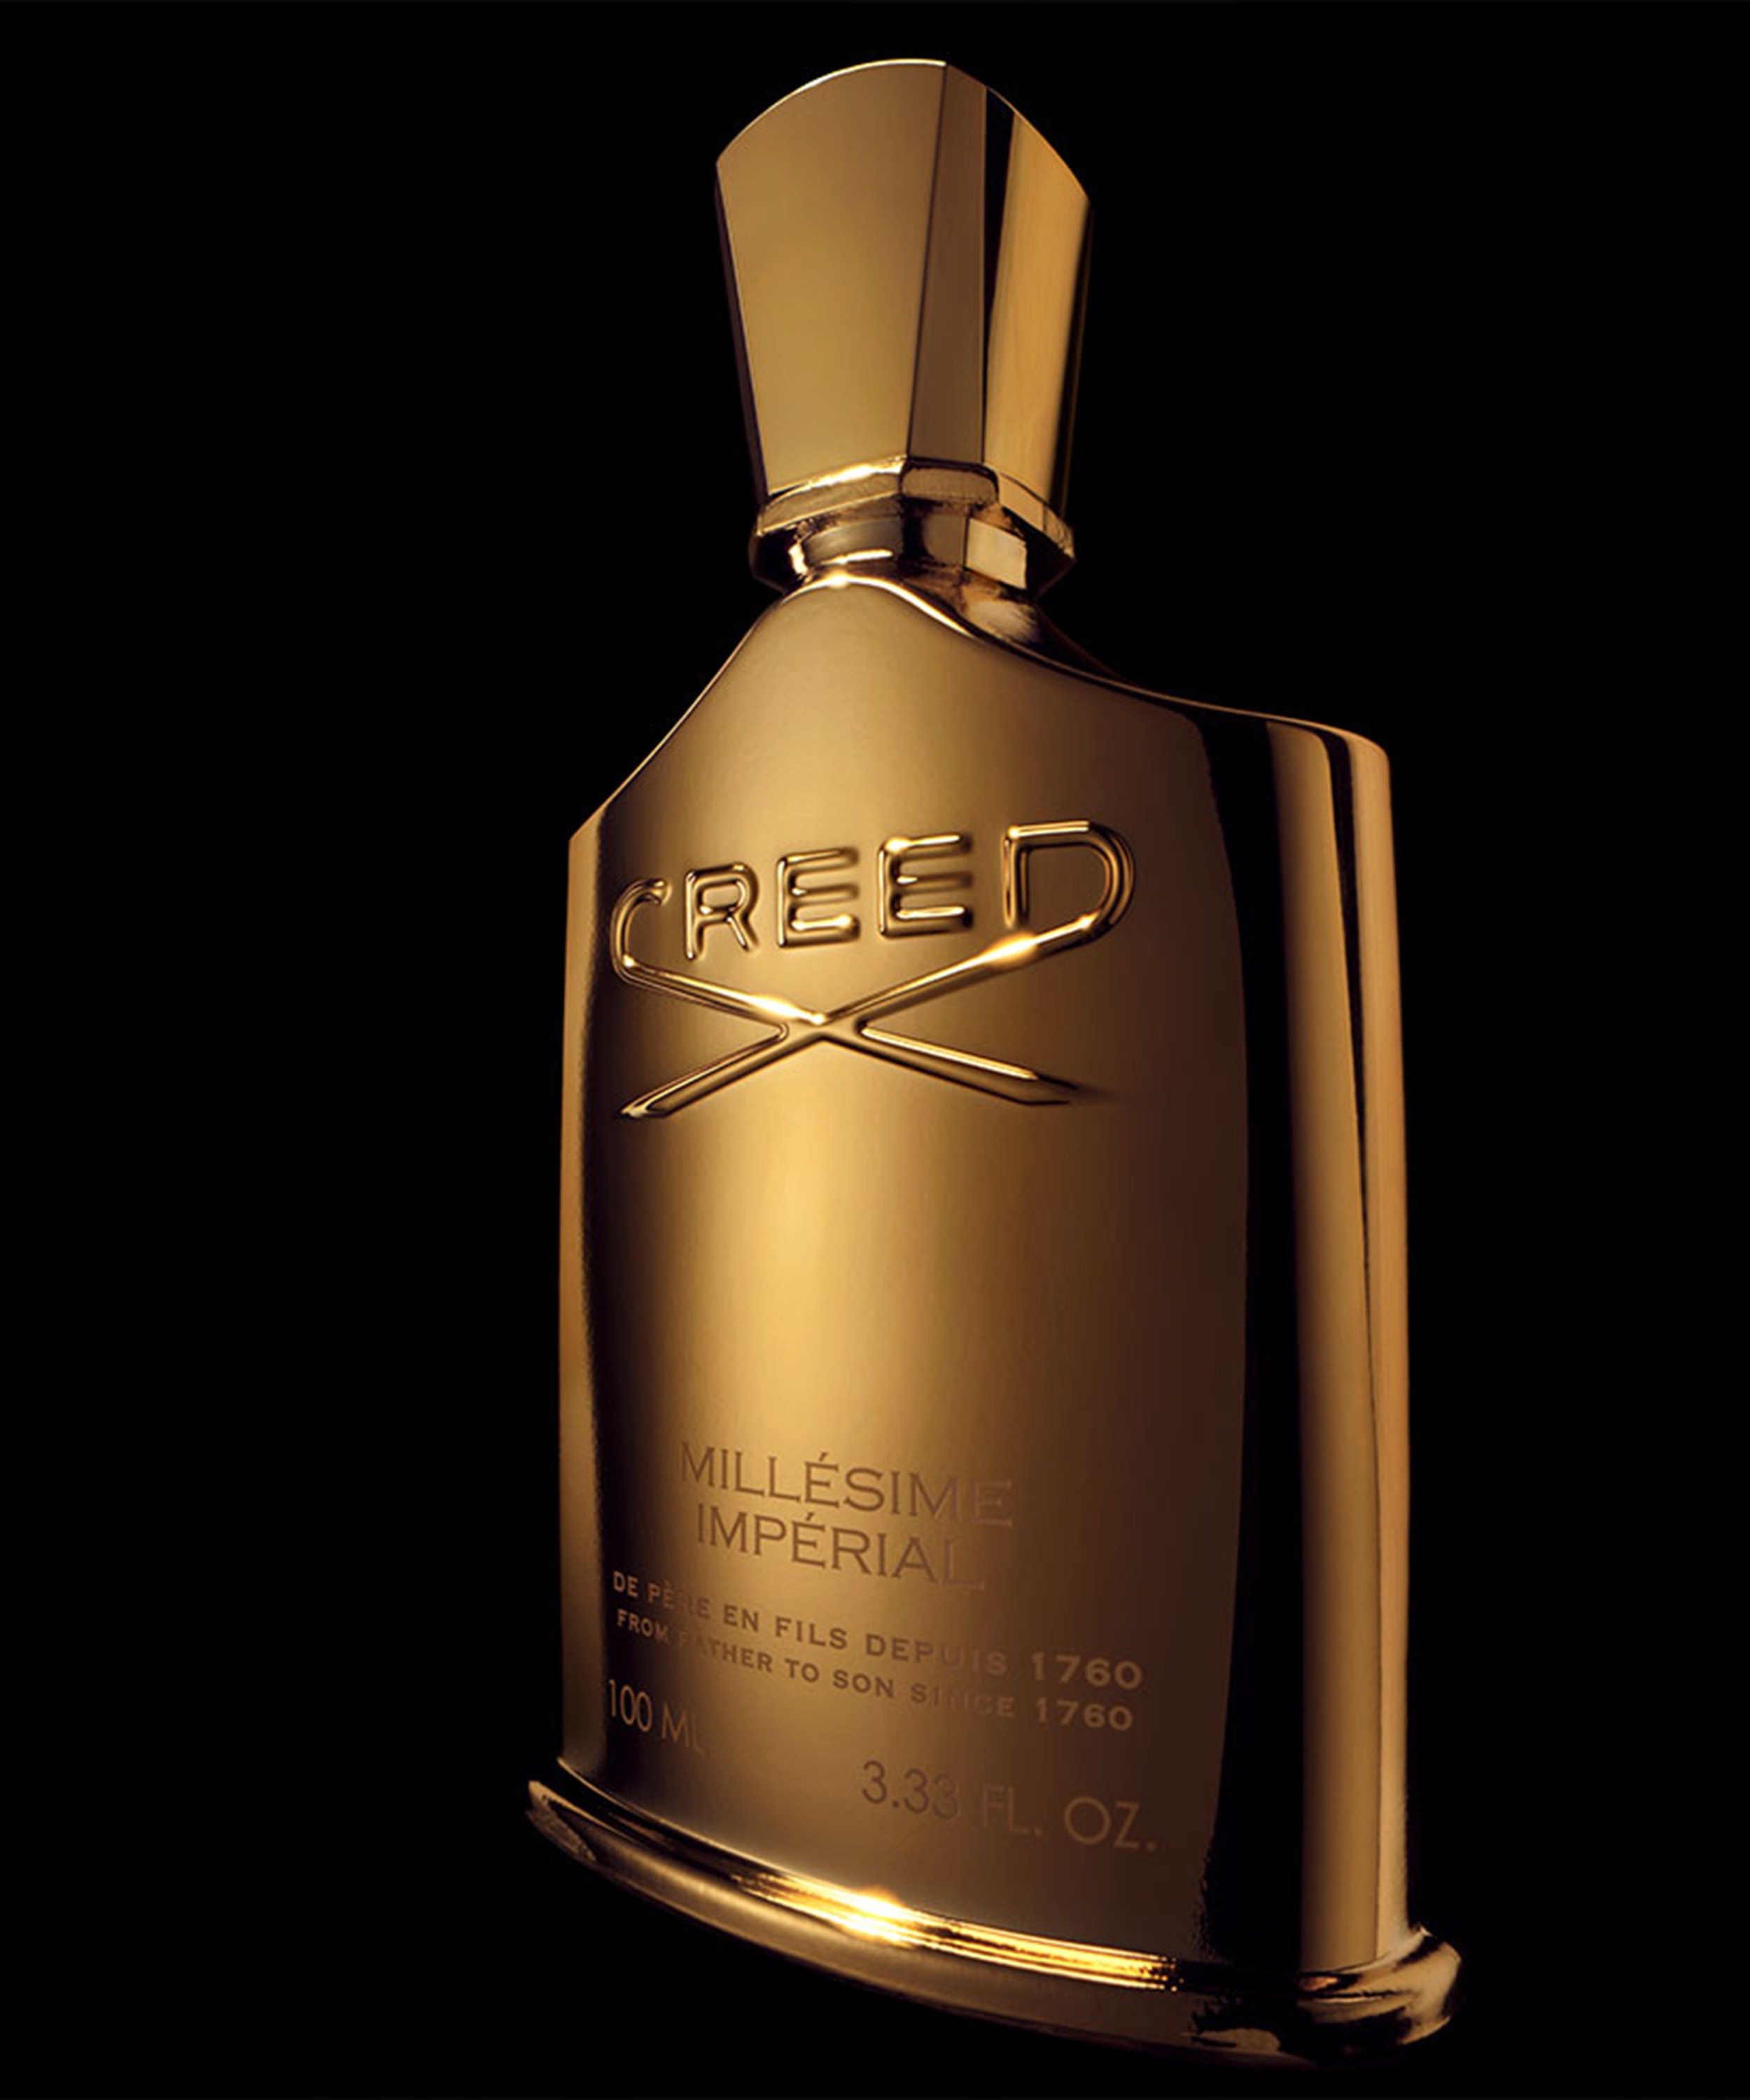 Creed - Millésime Imperial Eau de Parfum 100ml image number 2